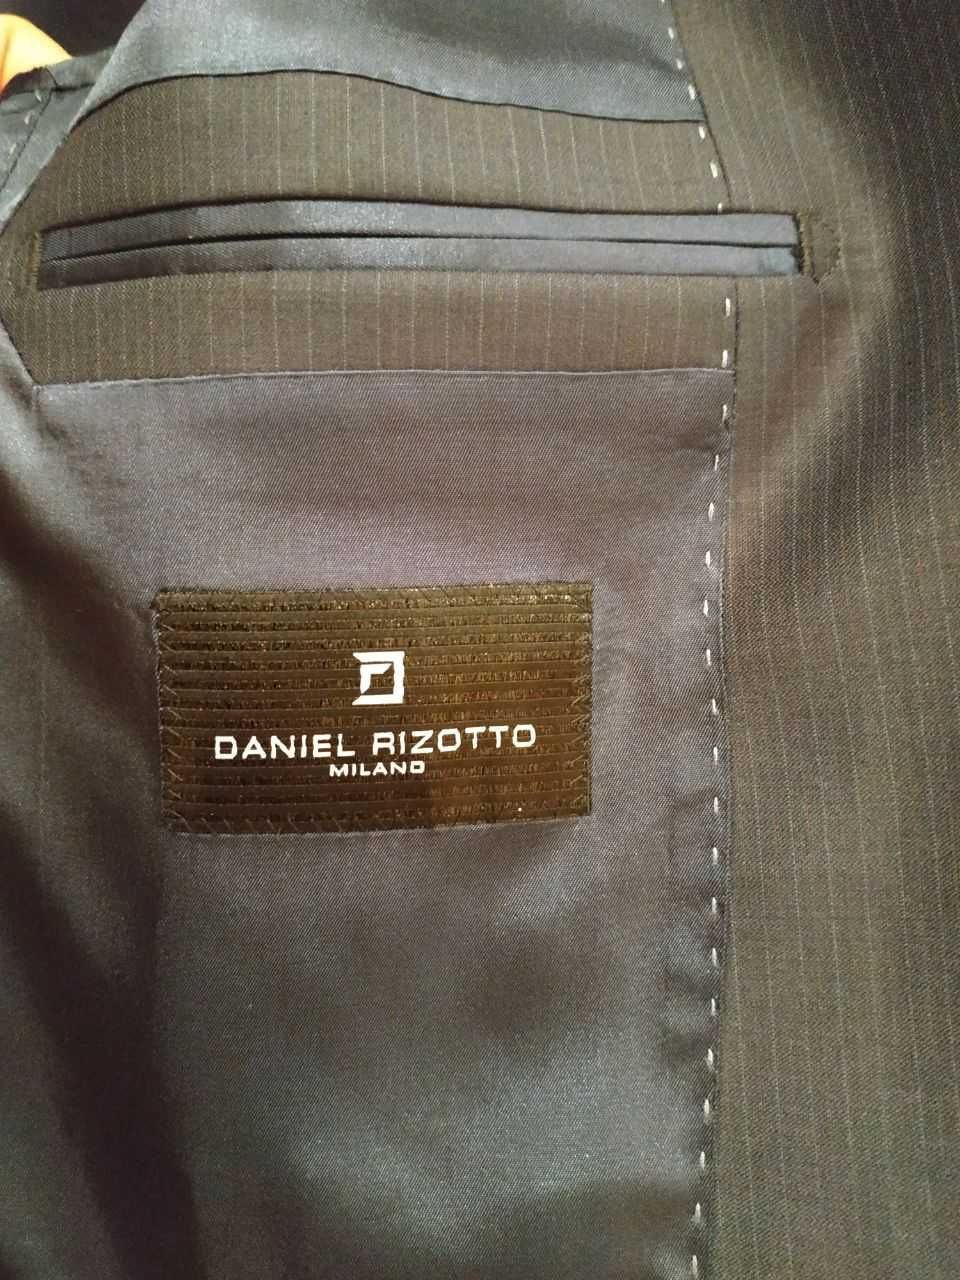 Чоловічій костюм 48-го розміру Daniel Rizotto, Milano, ідеальний стан